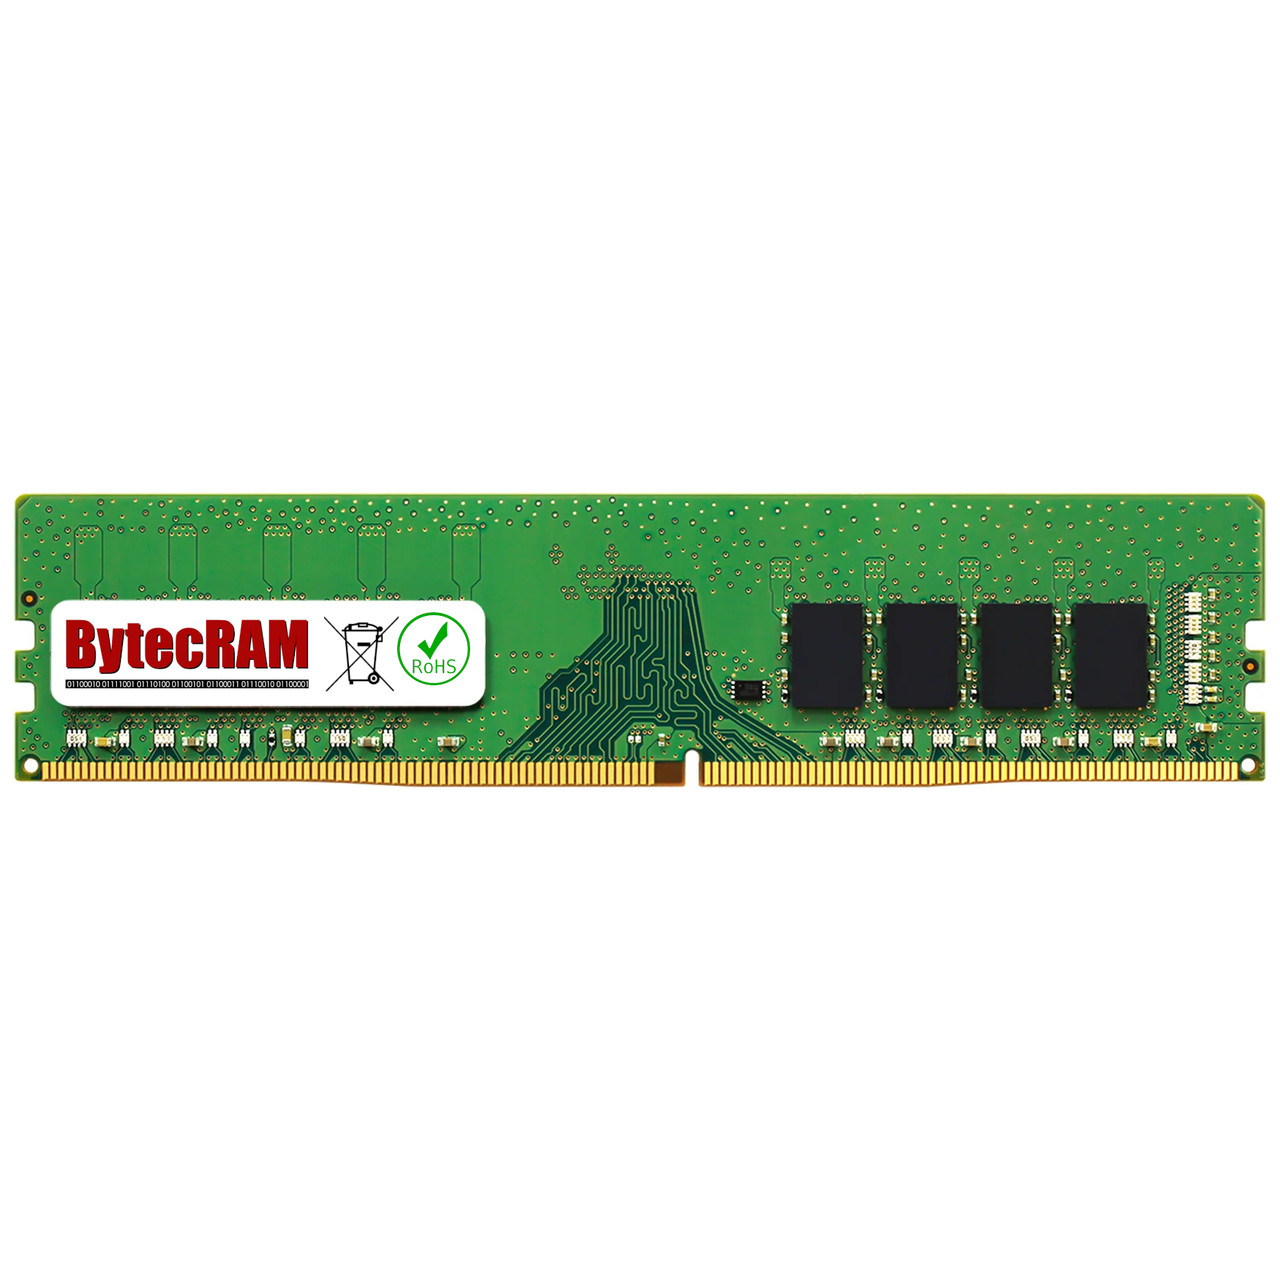 eBay*8GB Lenovo ThinkStation P310 DDR4 2400MHz UDIMM Memory RAM Upgrade